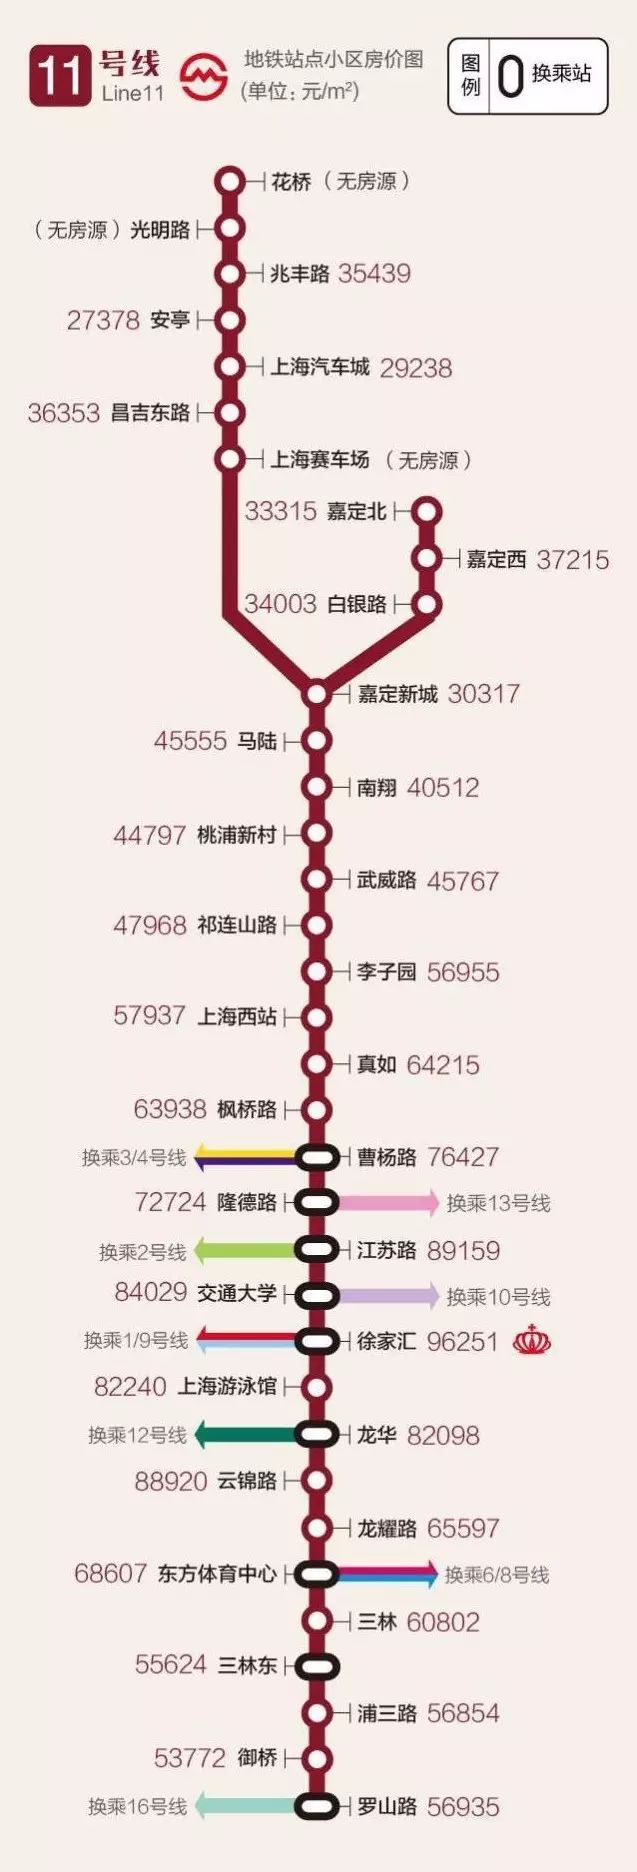 上海地铁沿线房价大全送给你!